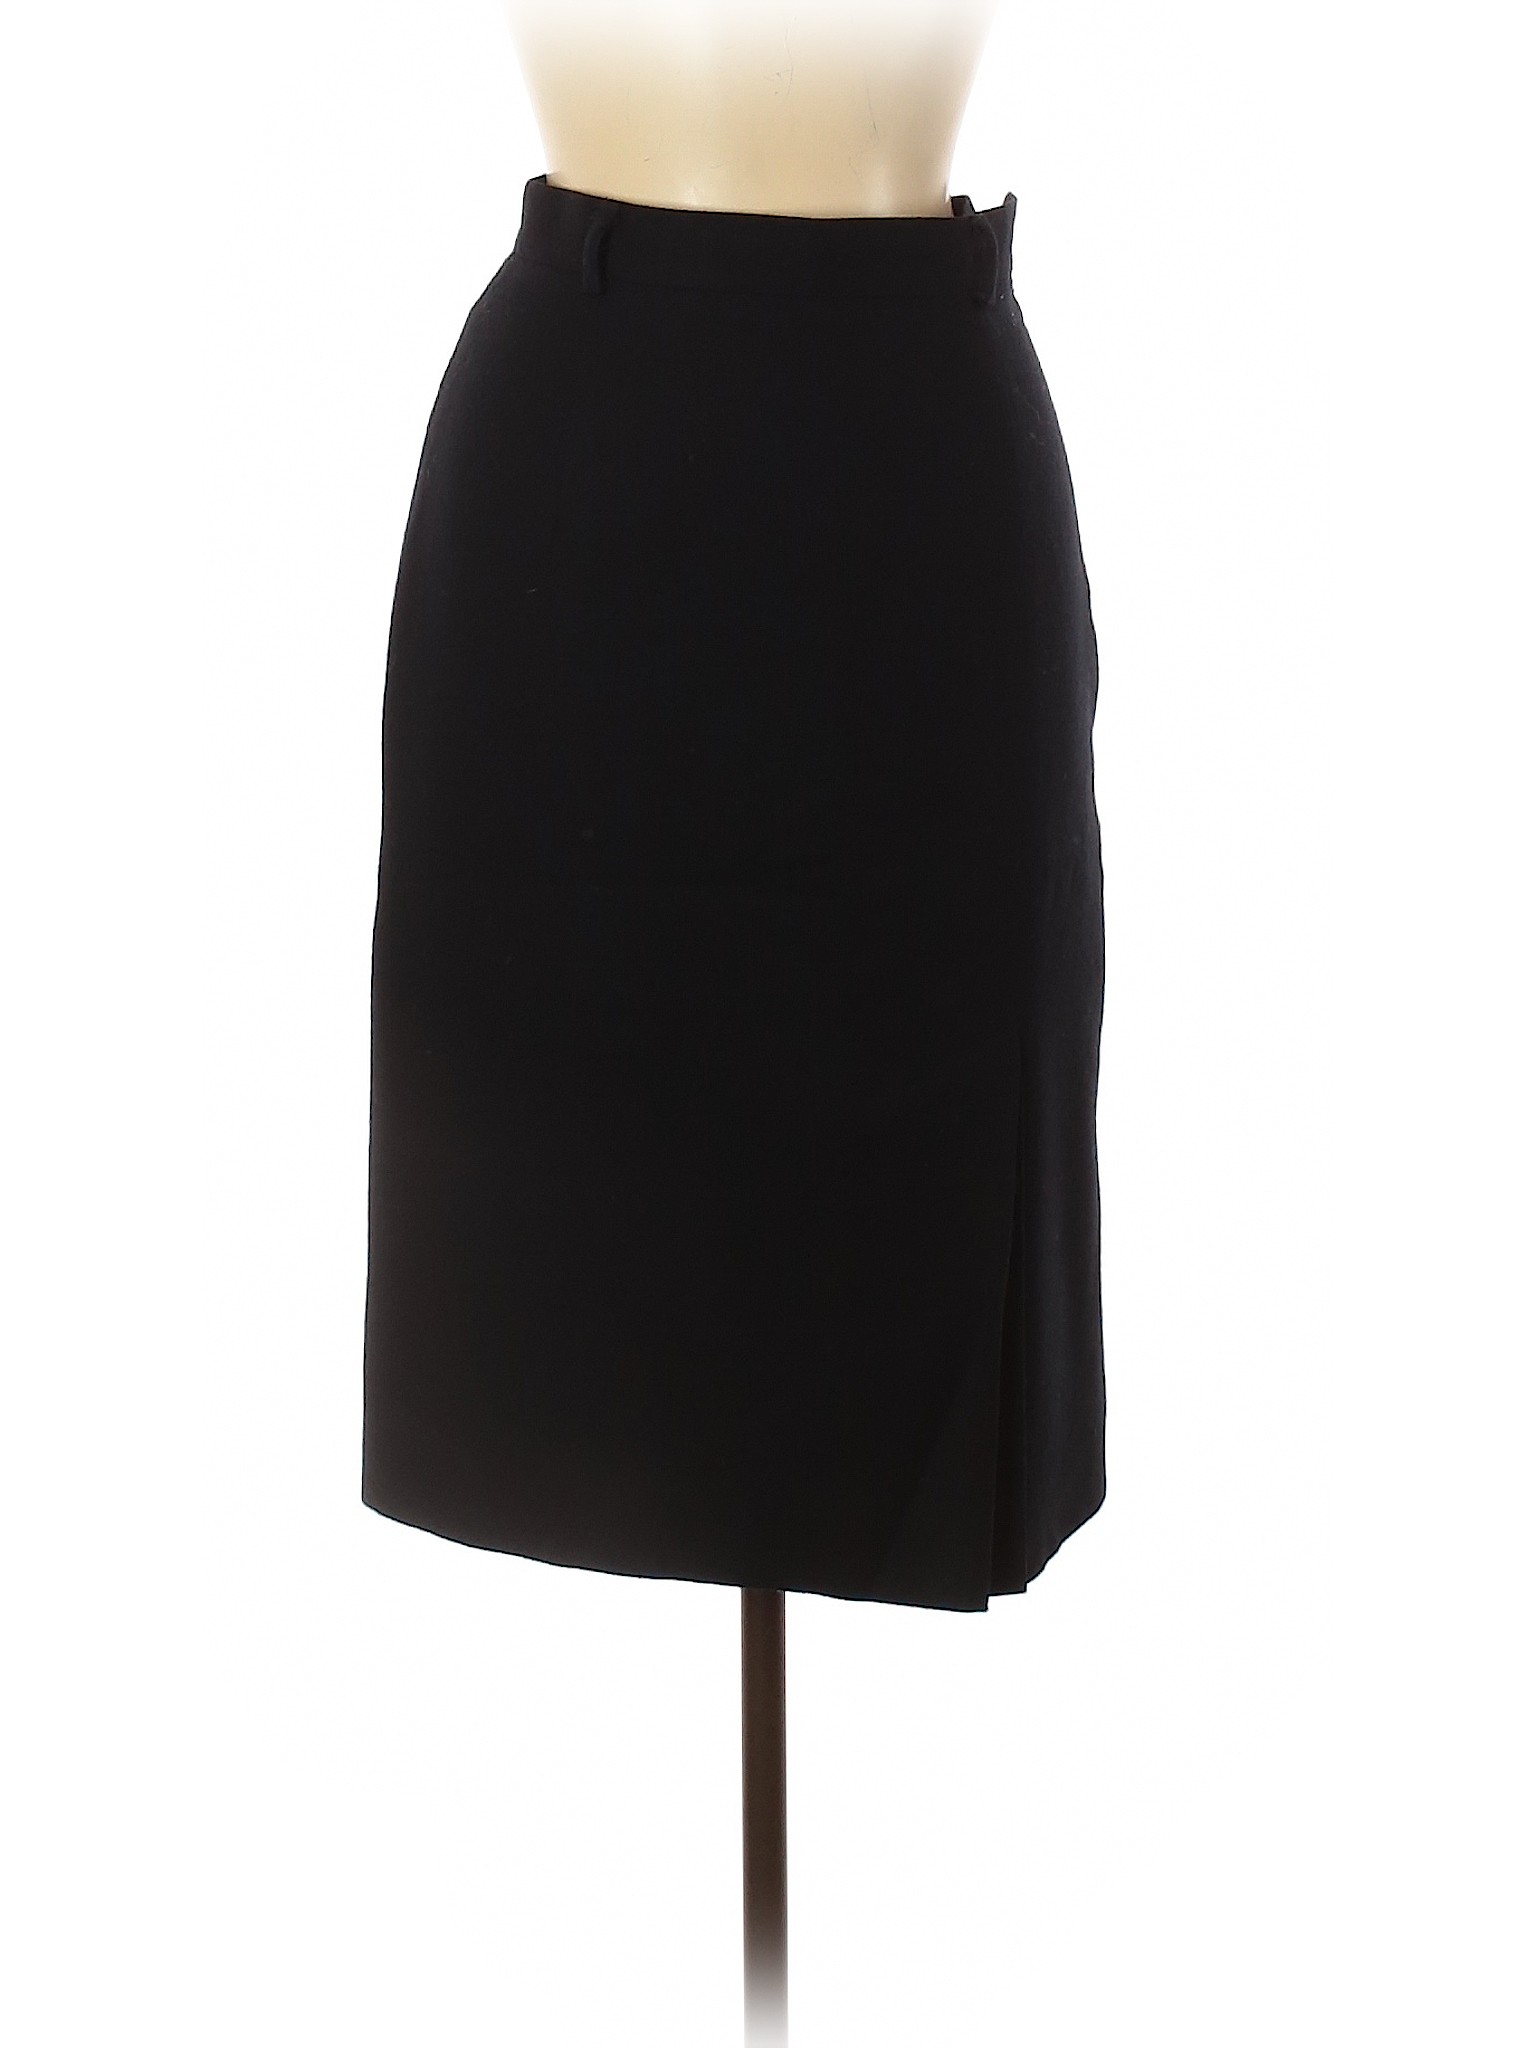 Jones New York Women Black Wool Skirt 4 | eBay